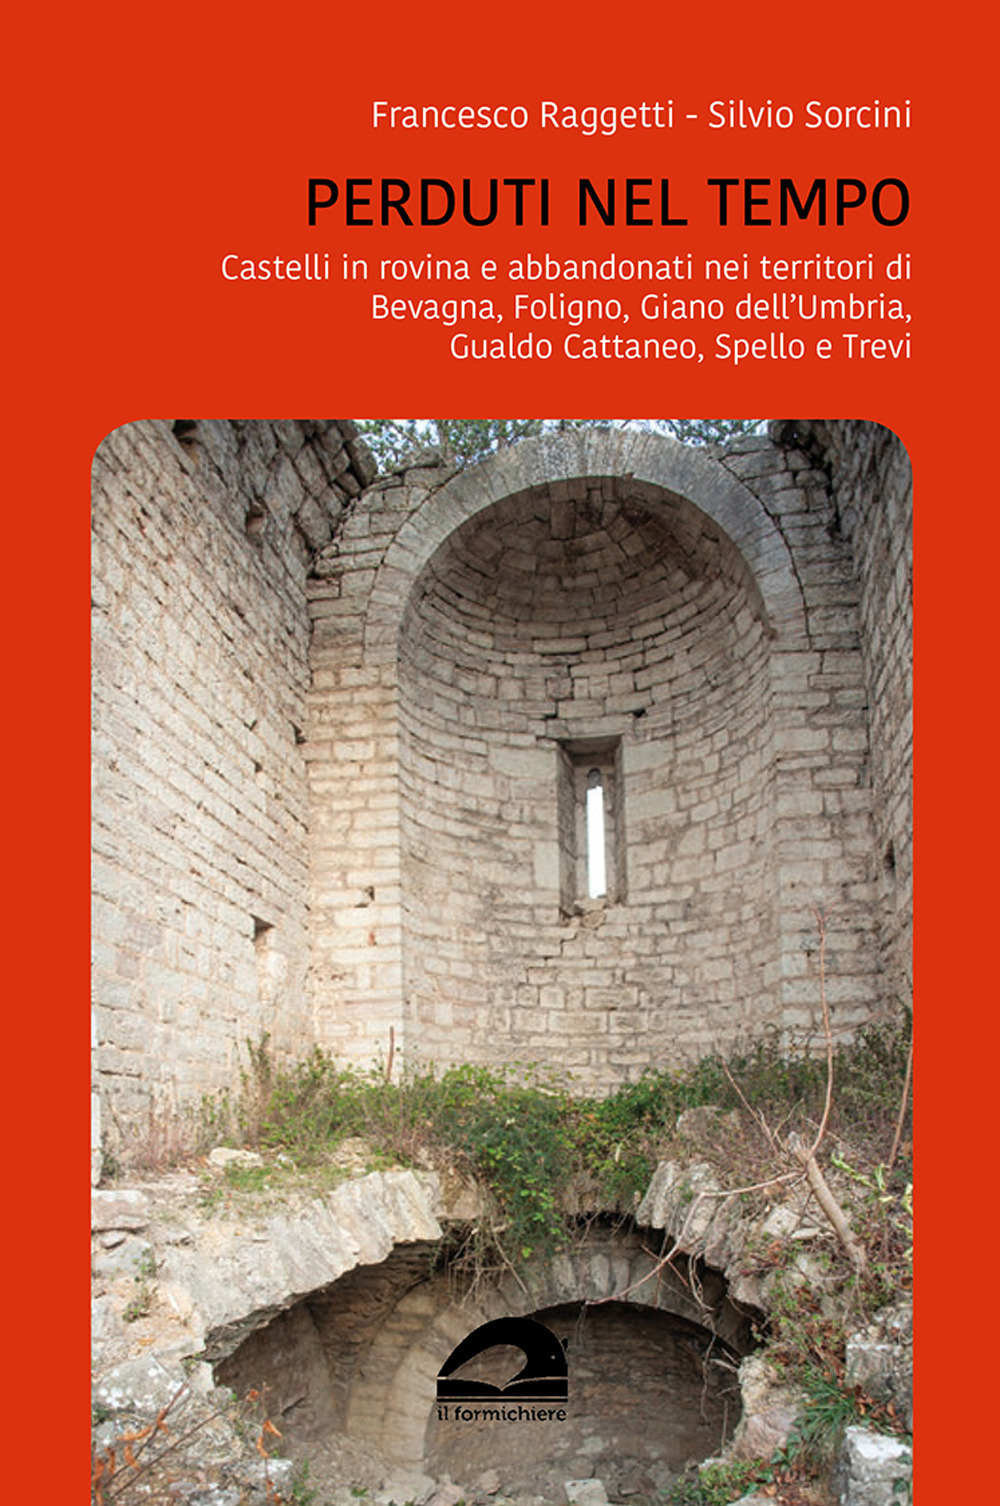 Perduti nel tempo. Castelli in rovina e abbandonati nei territori di Bevagna, Foligno, Giano dell'Umbria, Gualdo Cattaneo, Spello, Trevi